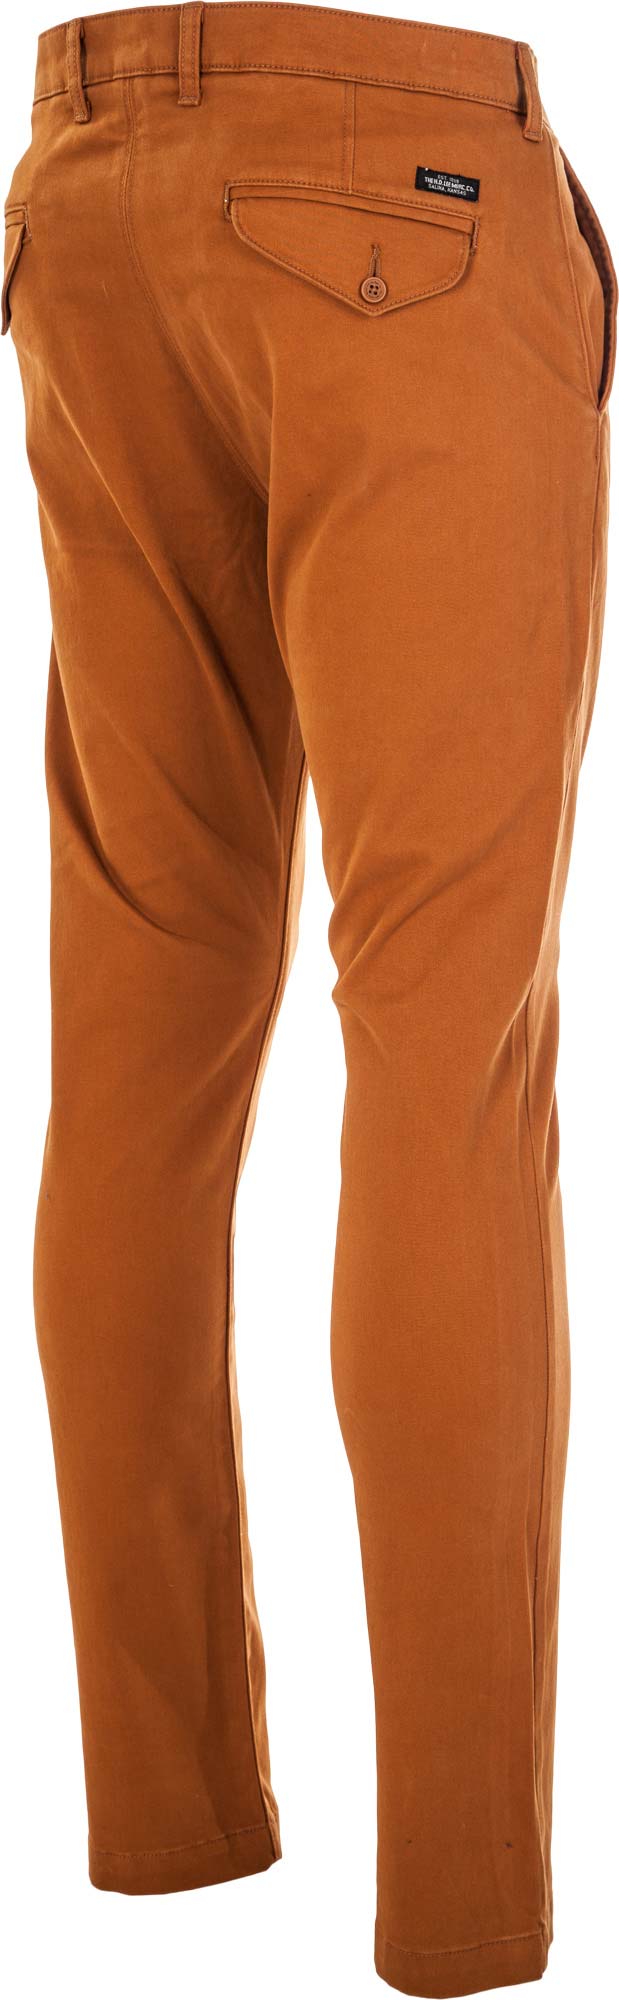 CHINO GLAZED GINGER - Pánské kalhoty